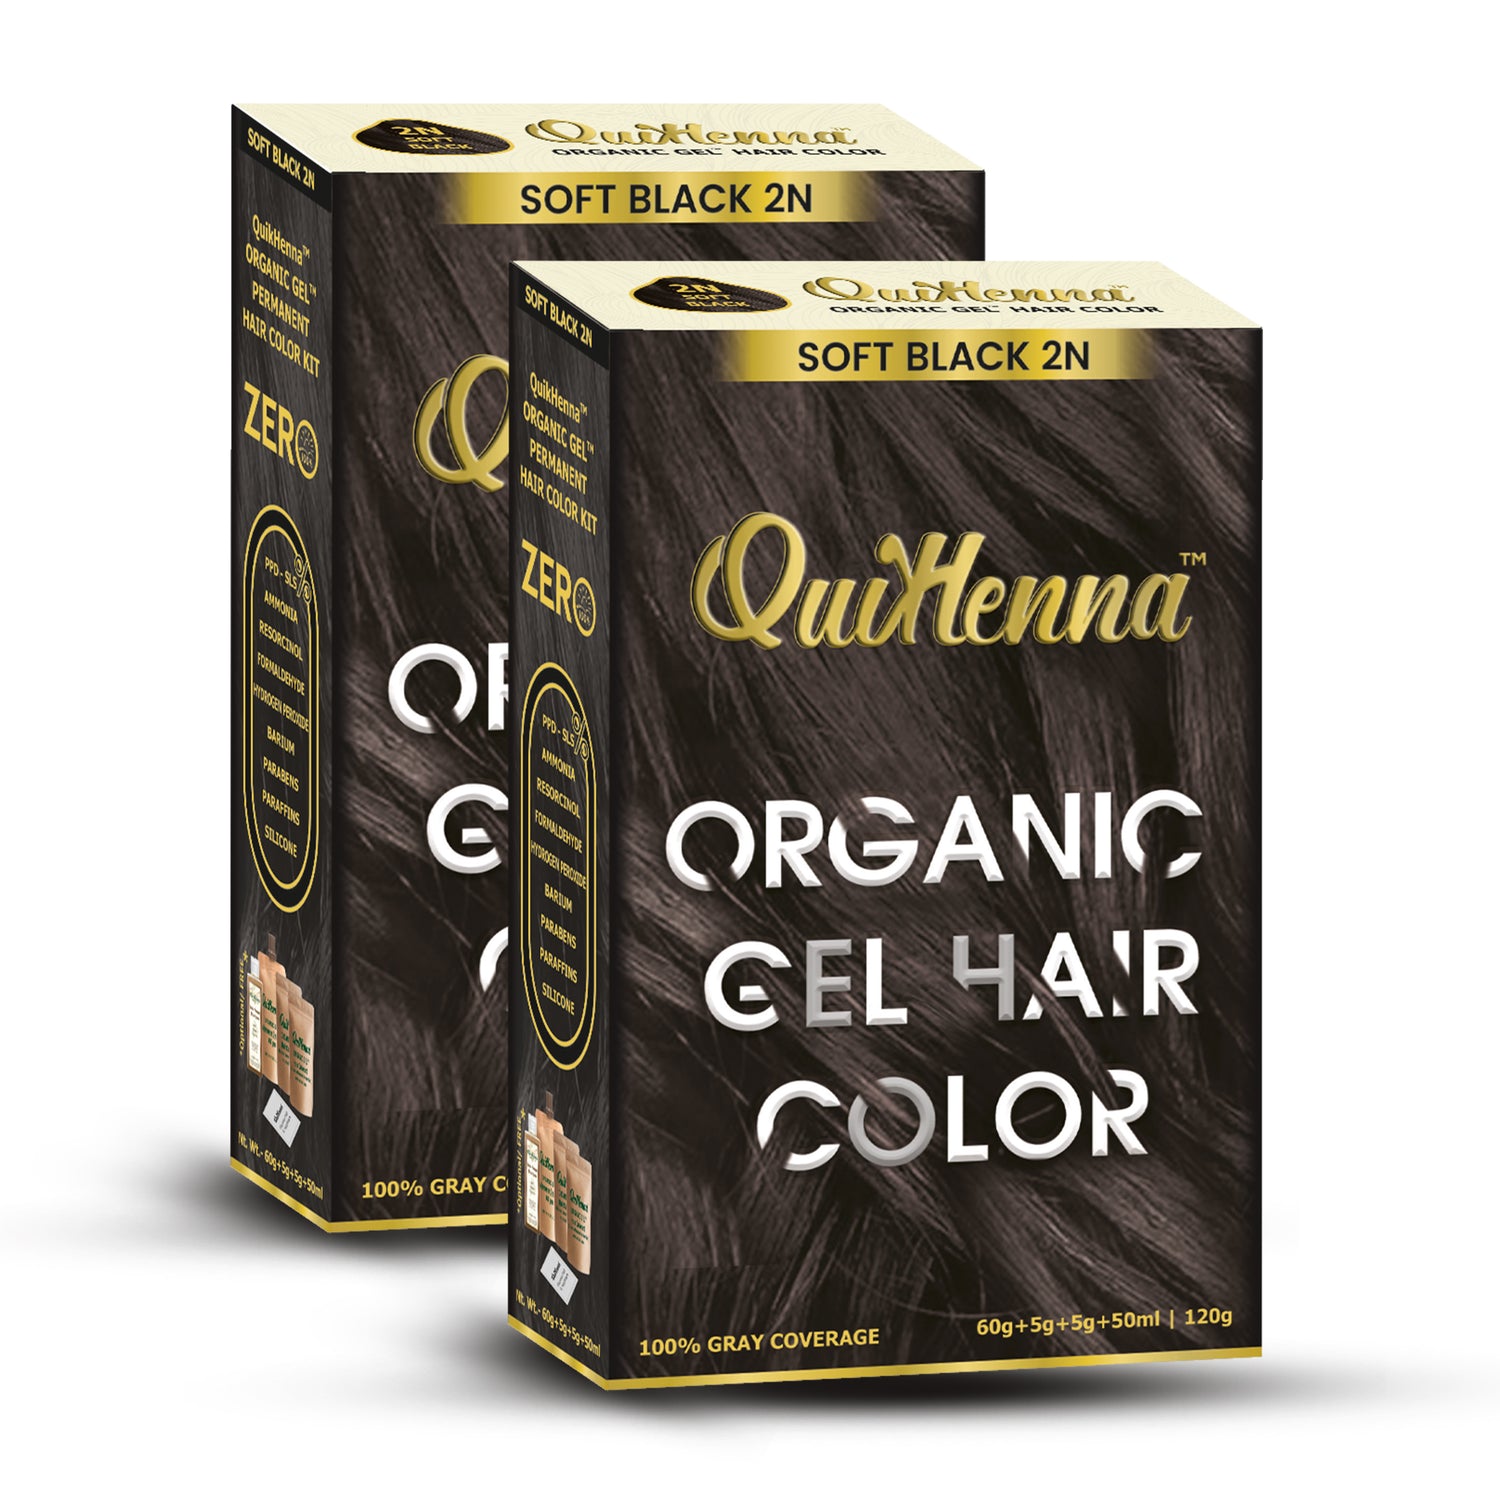 QuikHenna Organic Gel Hair Colour-20